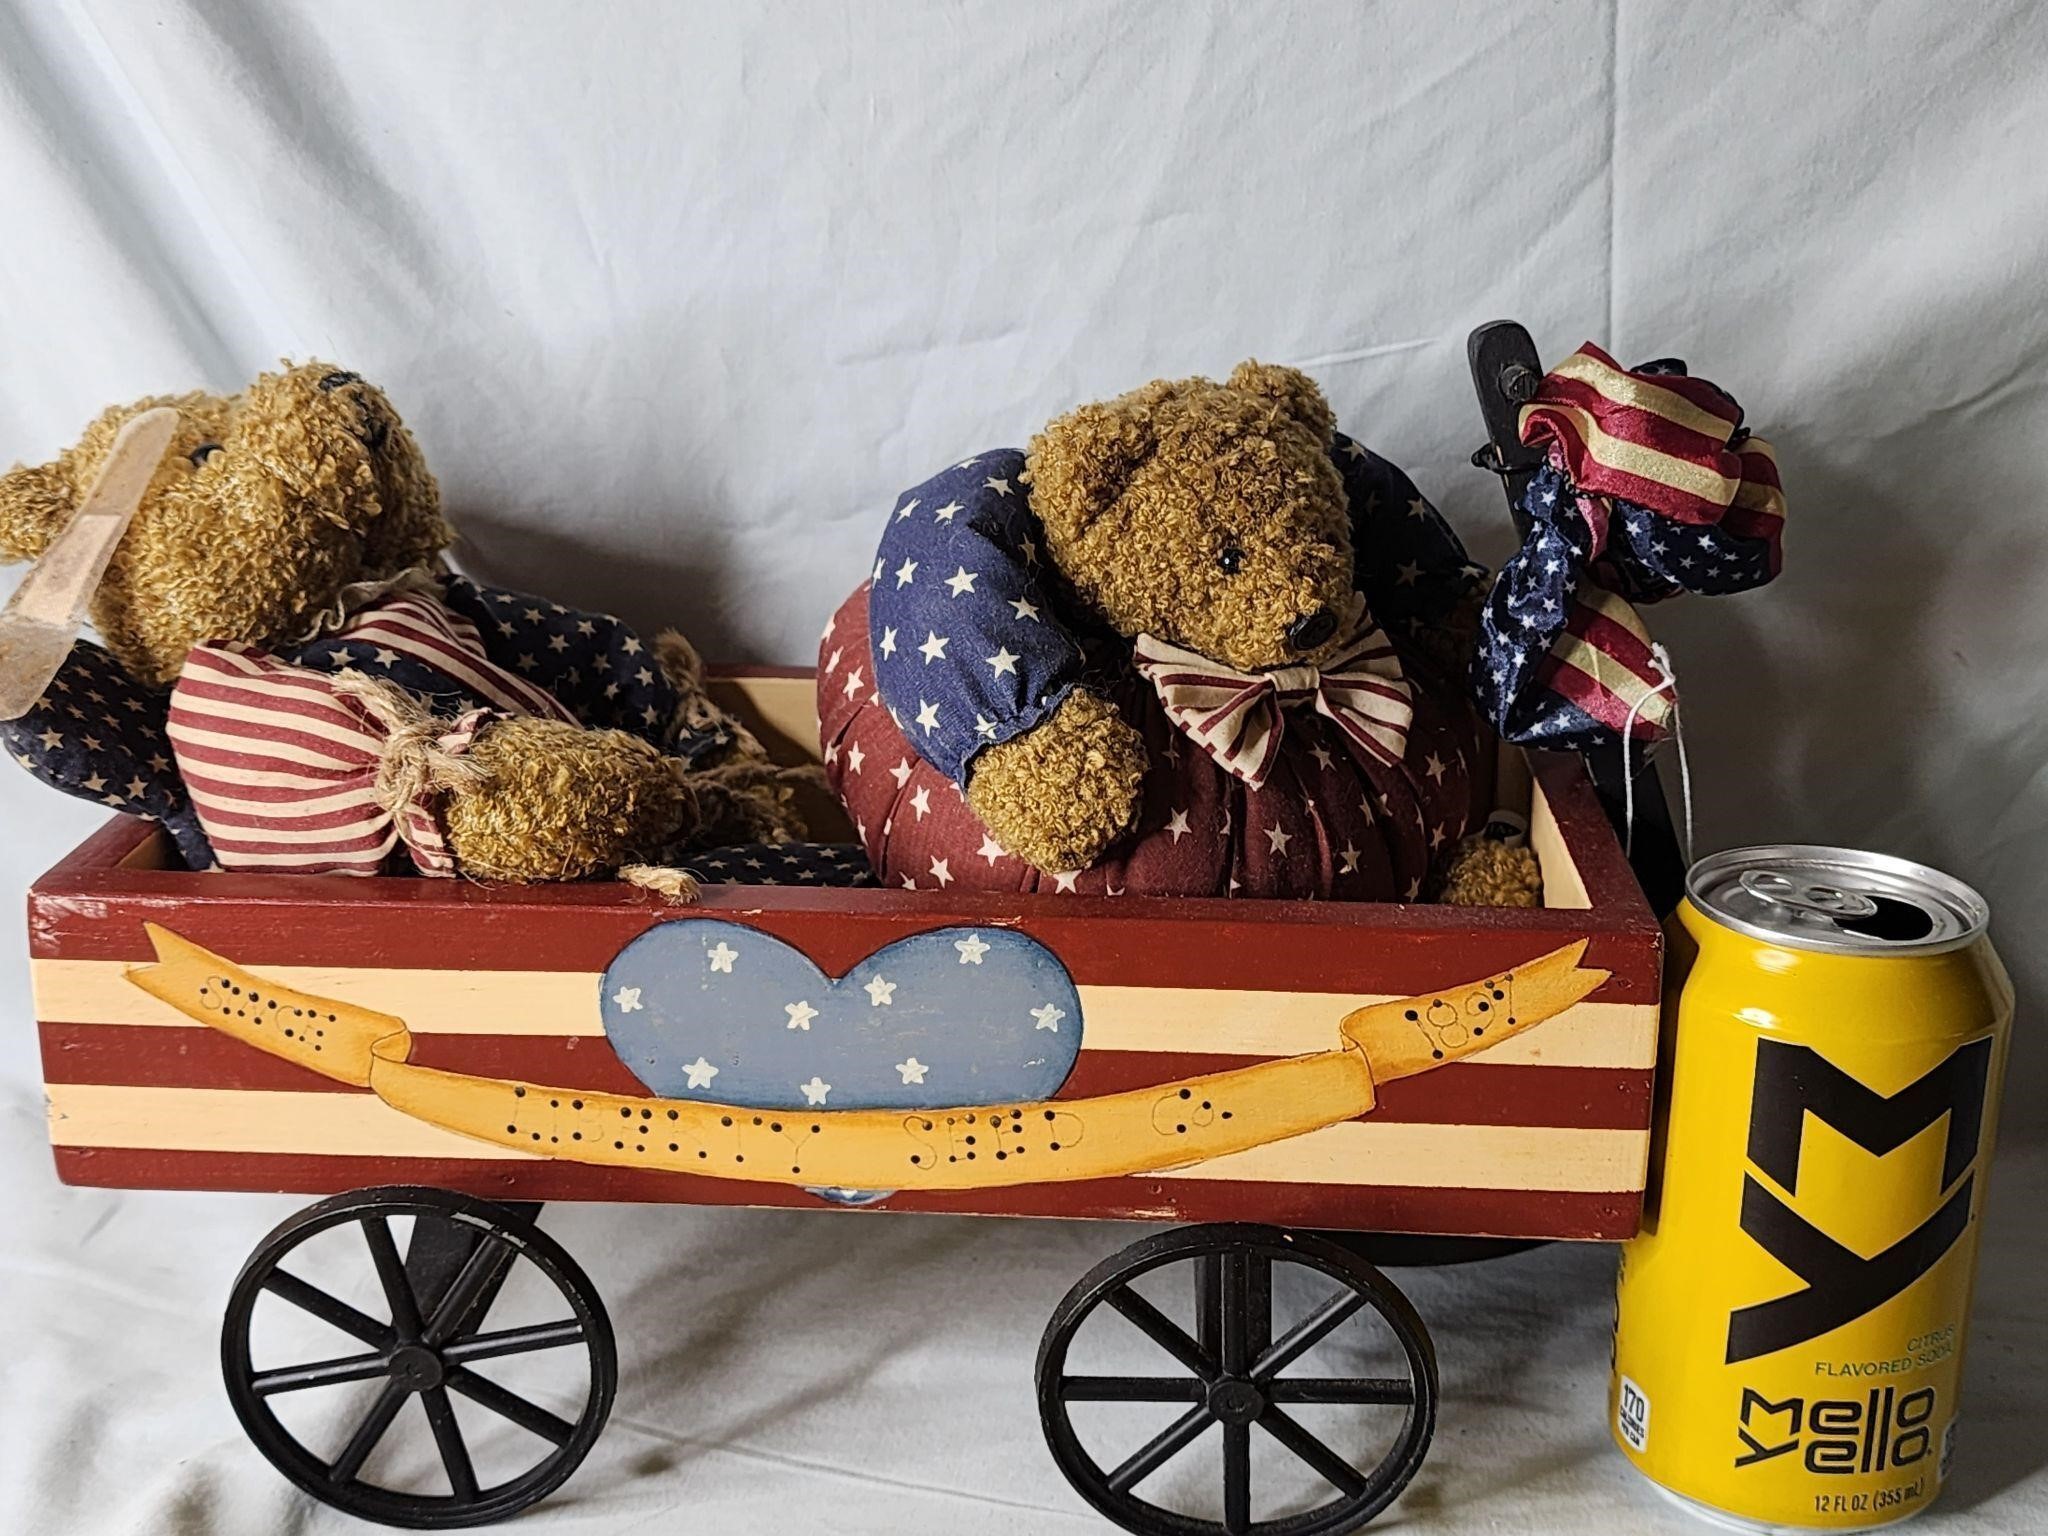 USA Flag Wagon and bears